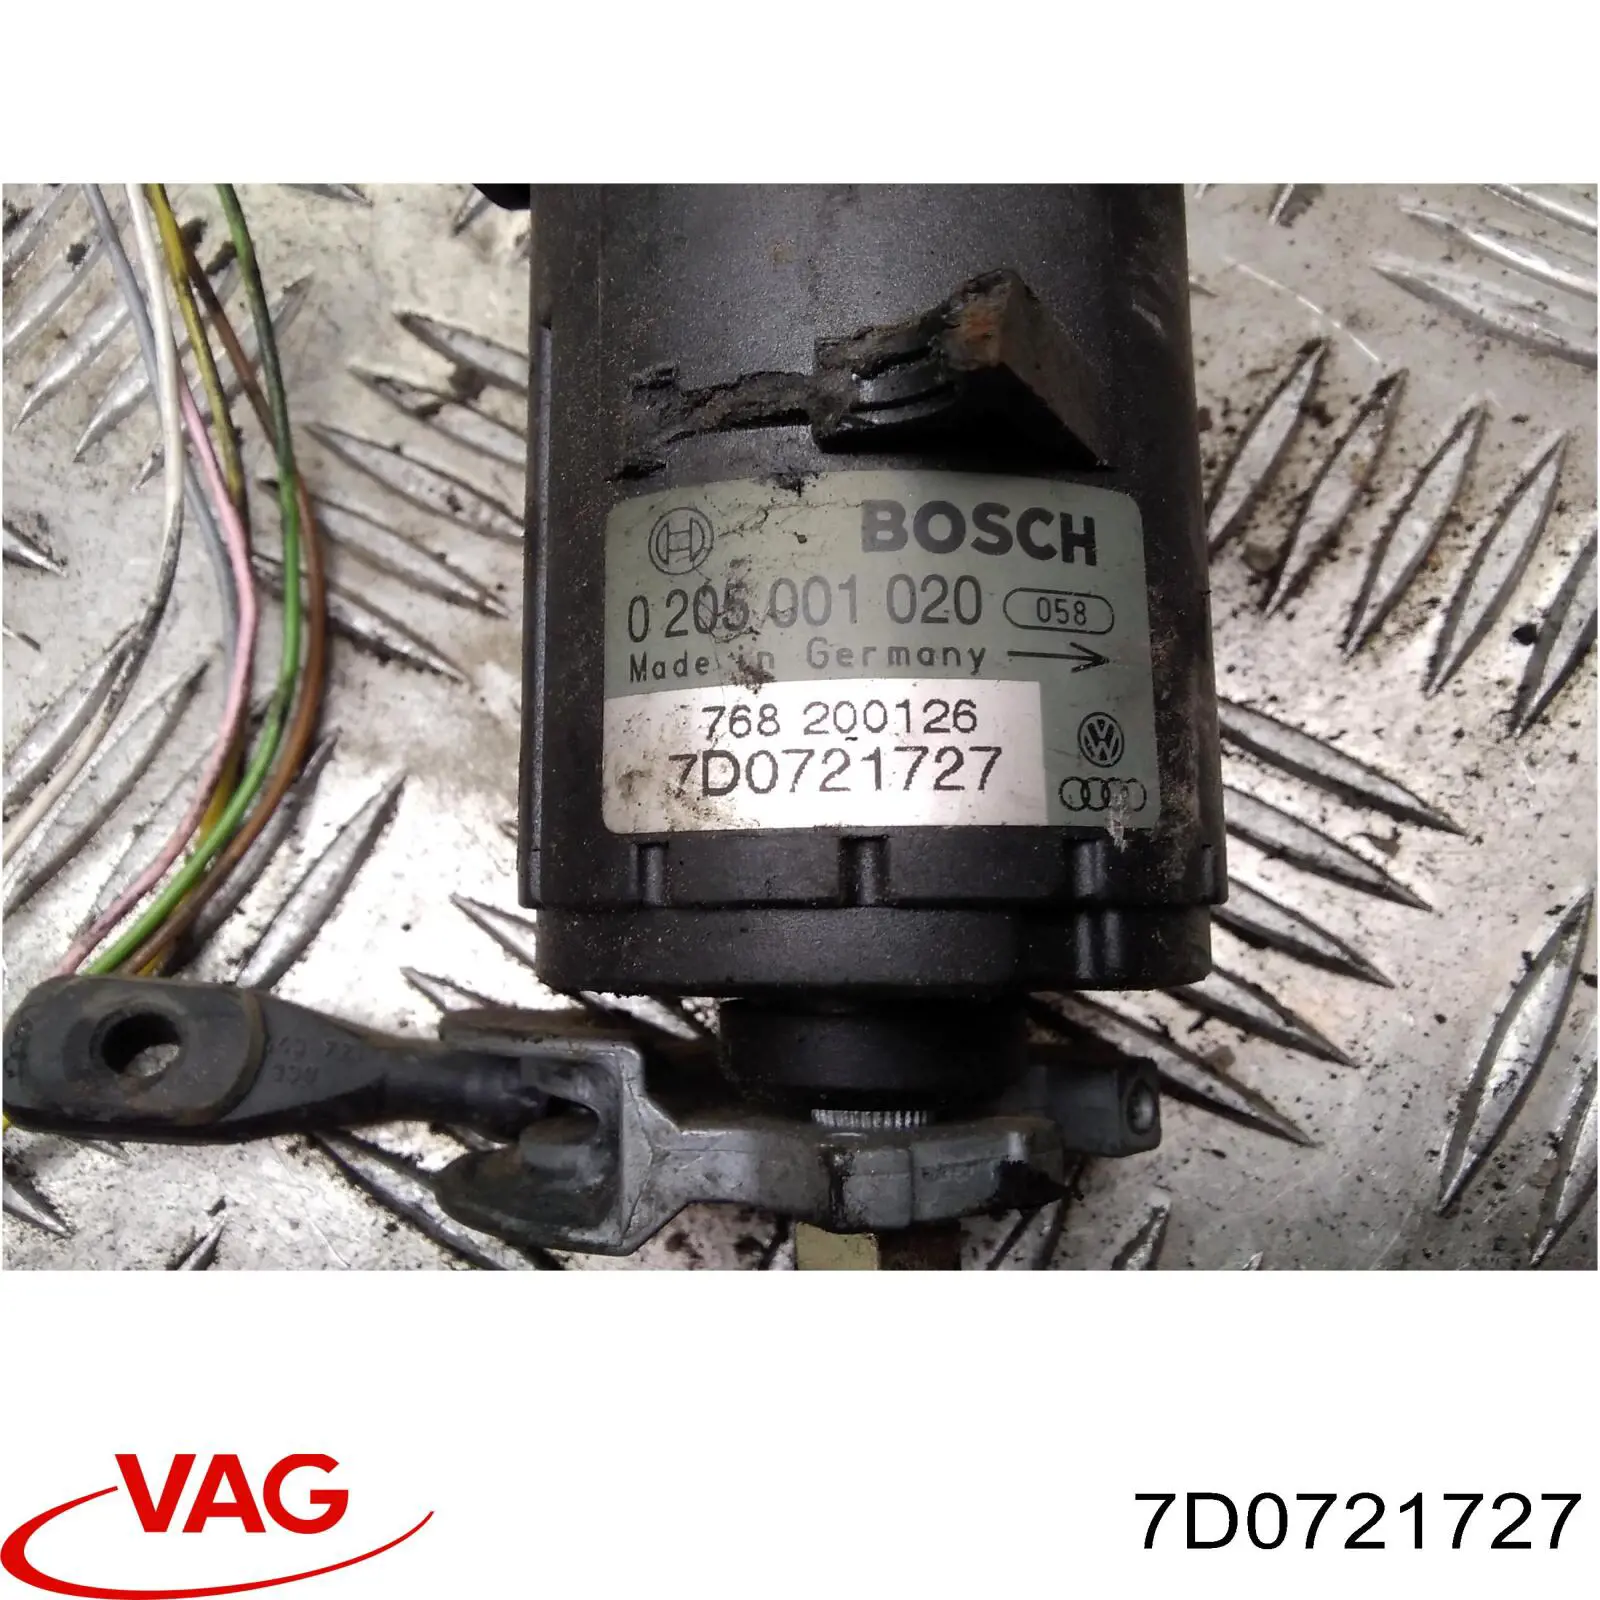 7D0721727 VAG датчик положения педали акселератора (газа)